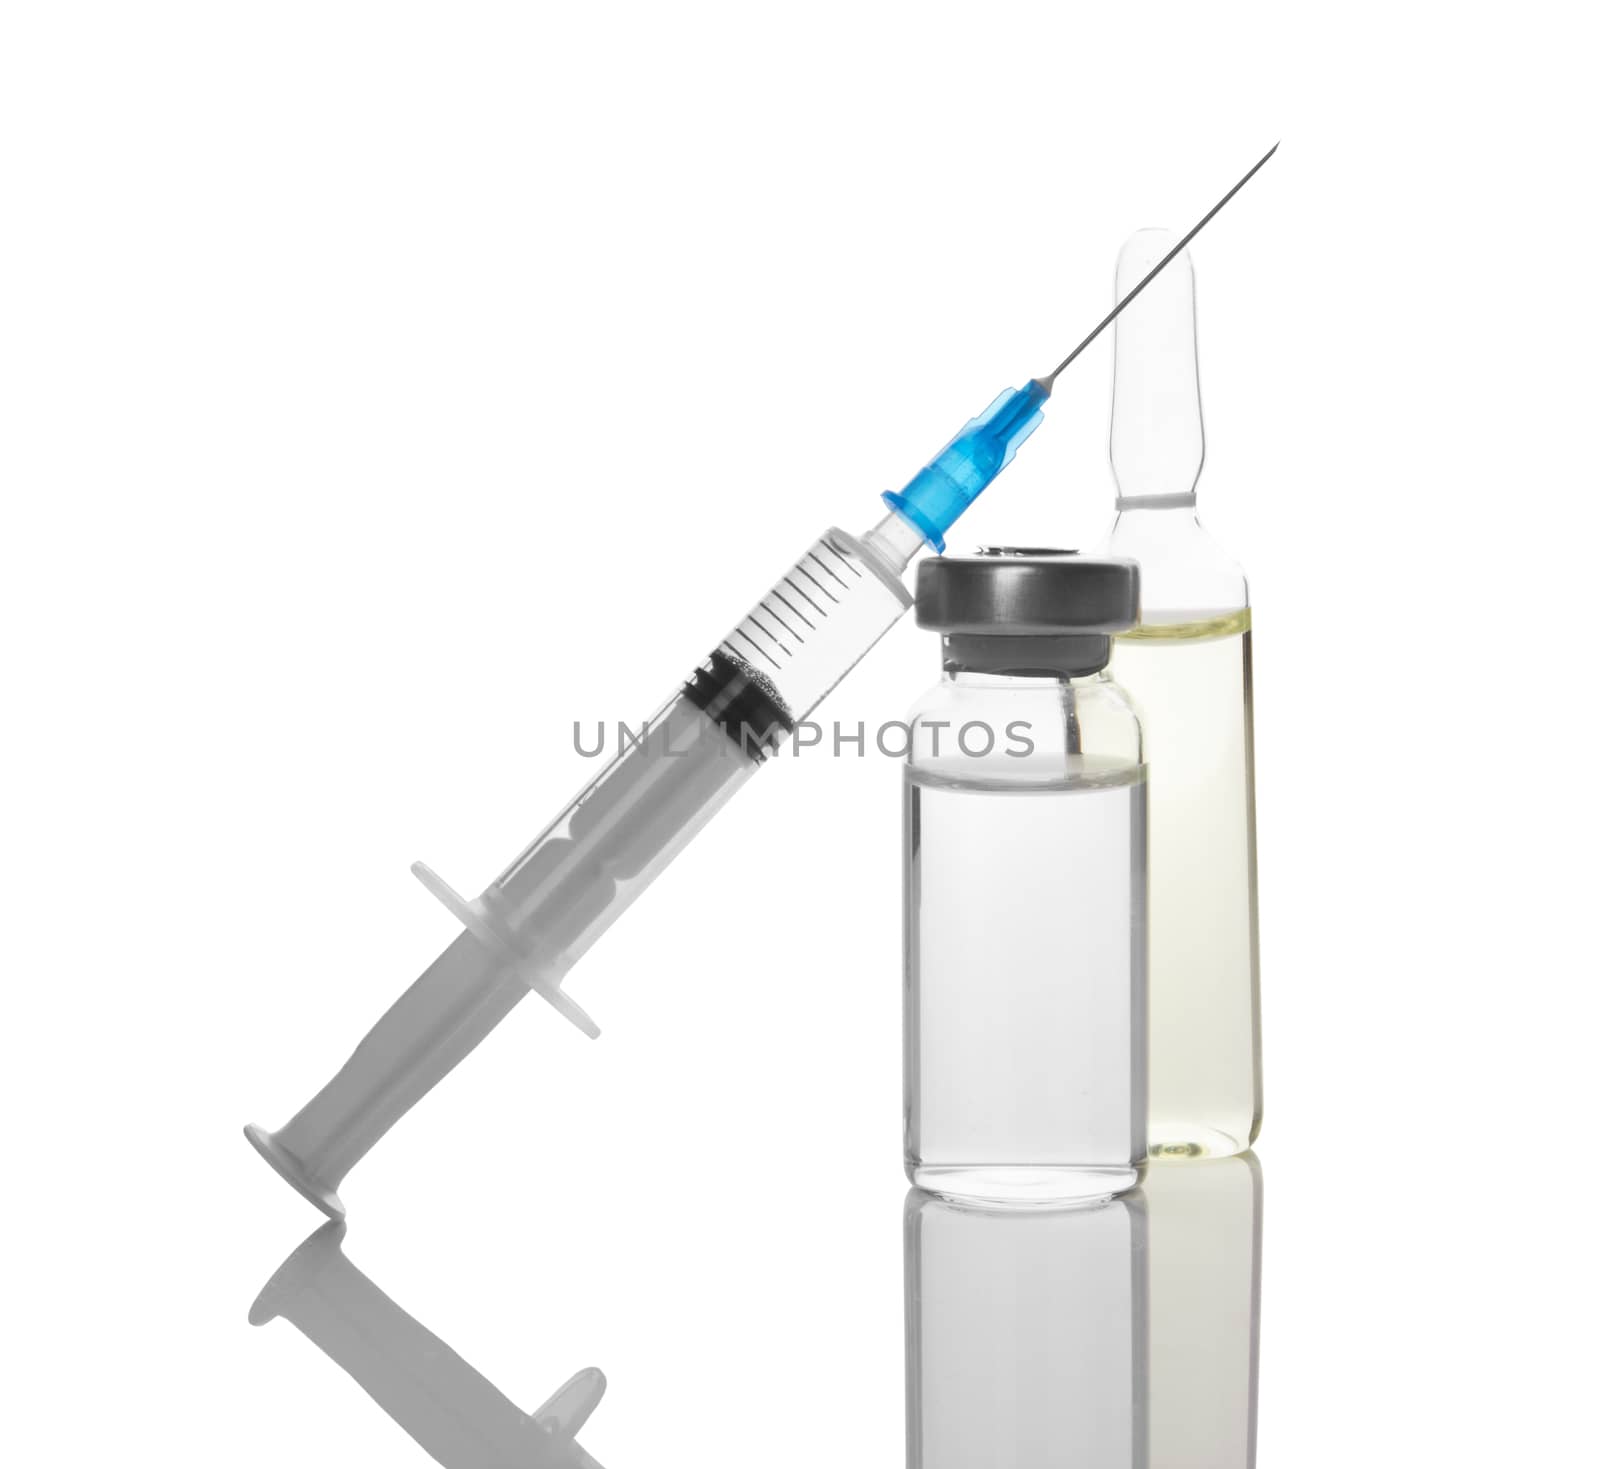 Ampules and syringe isolated on white background 